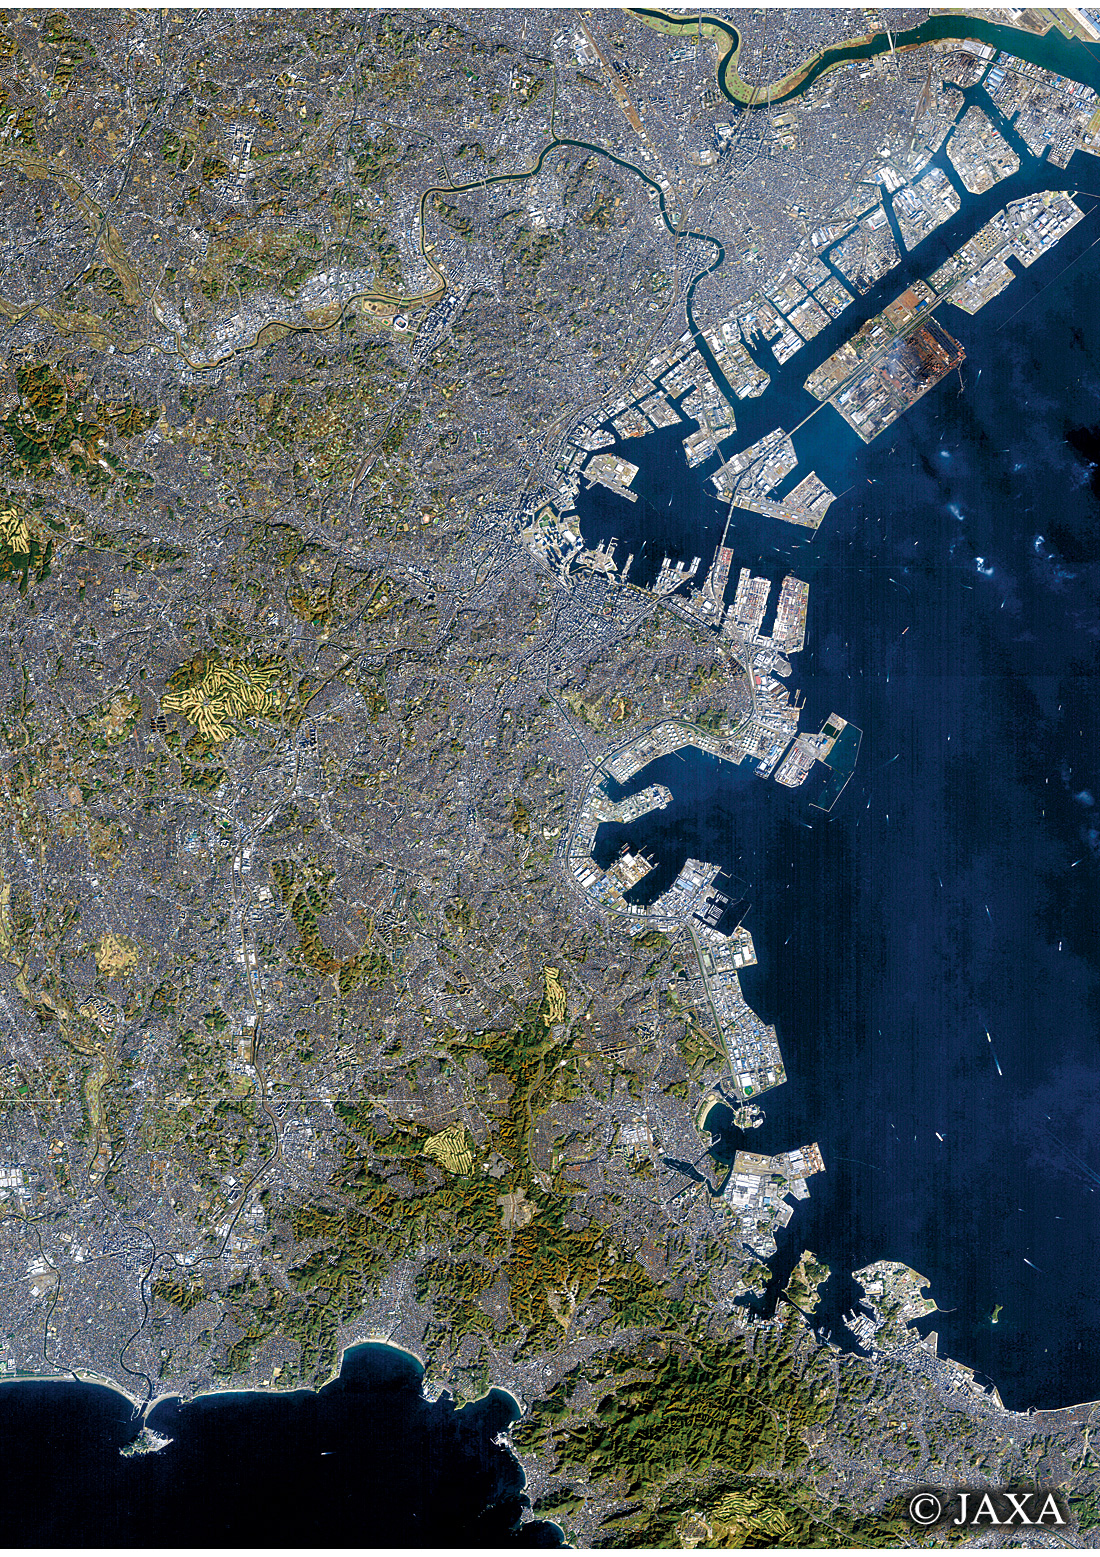 だいちから見た日本の都市 横浜周辺:衛星画像